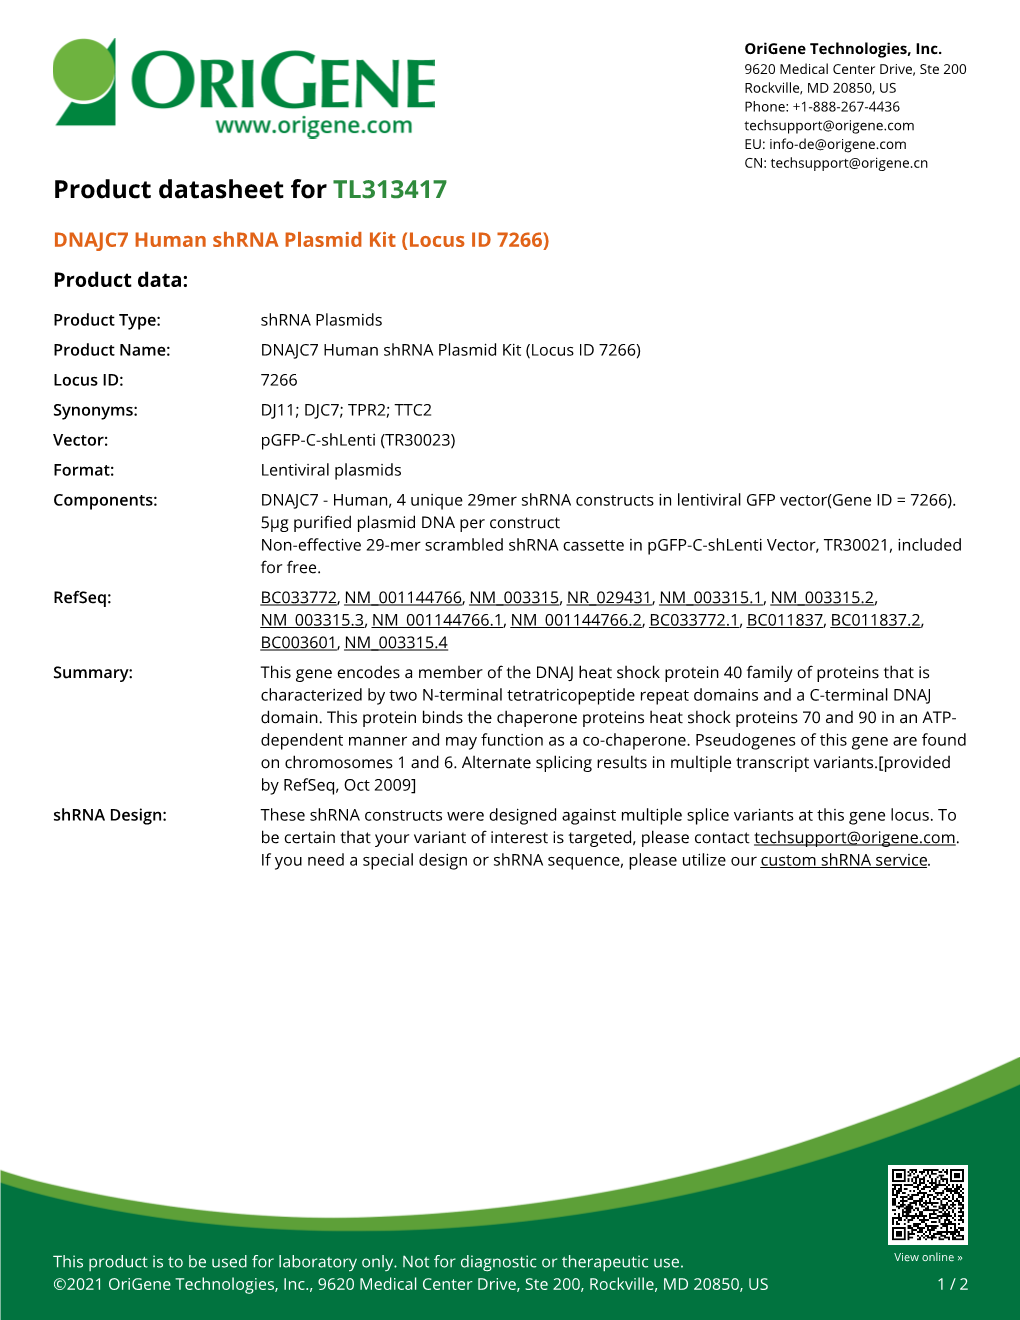 DNAJC7 Human Shrna Plasmid Kit (Locus ID 7266) Product Data